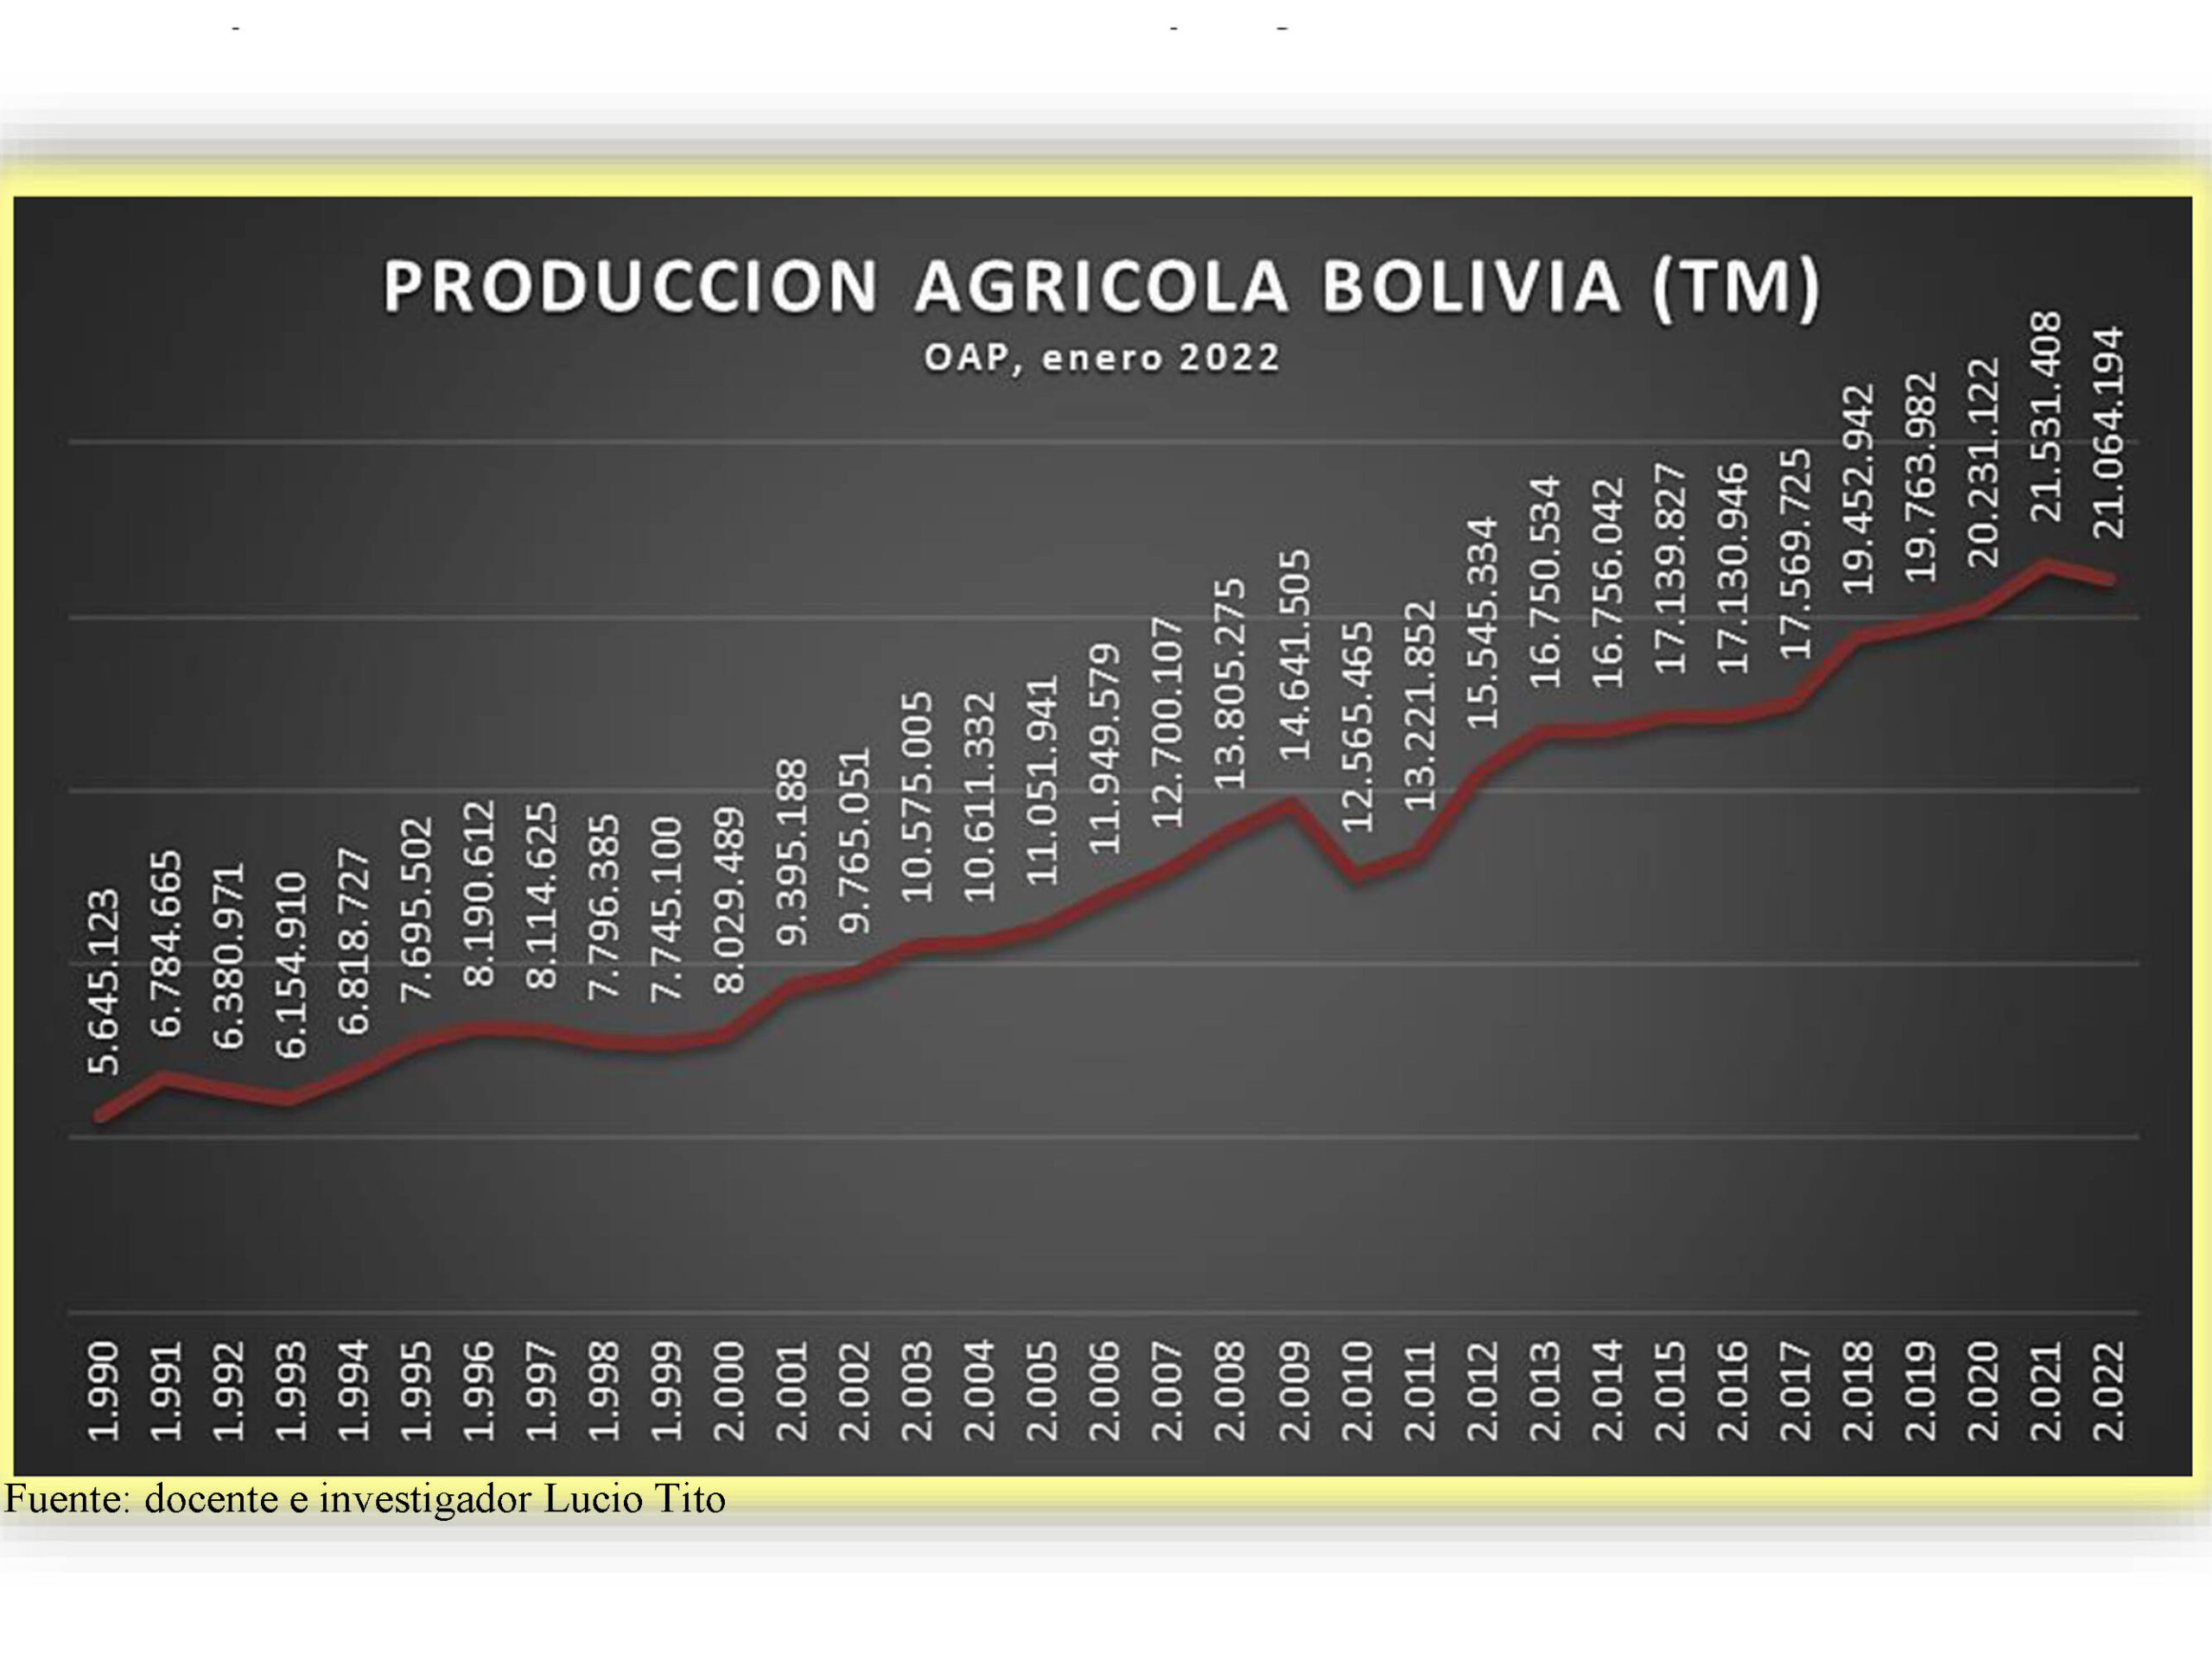 Producción agrícola bajará en más  de 400 mil toneladas en 2022